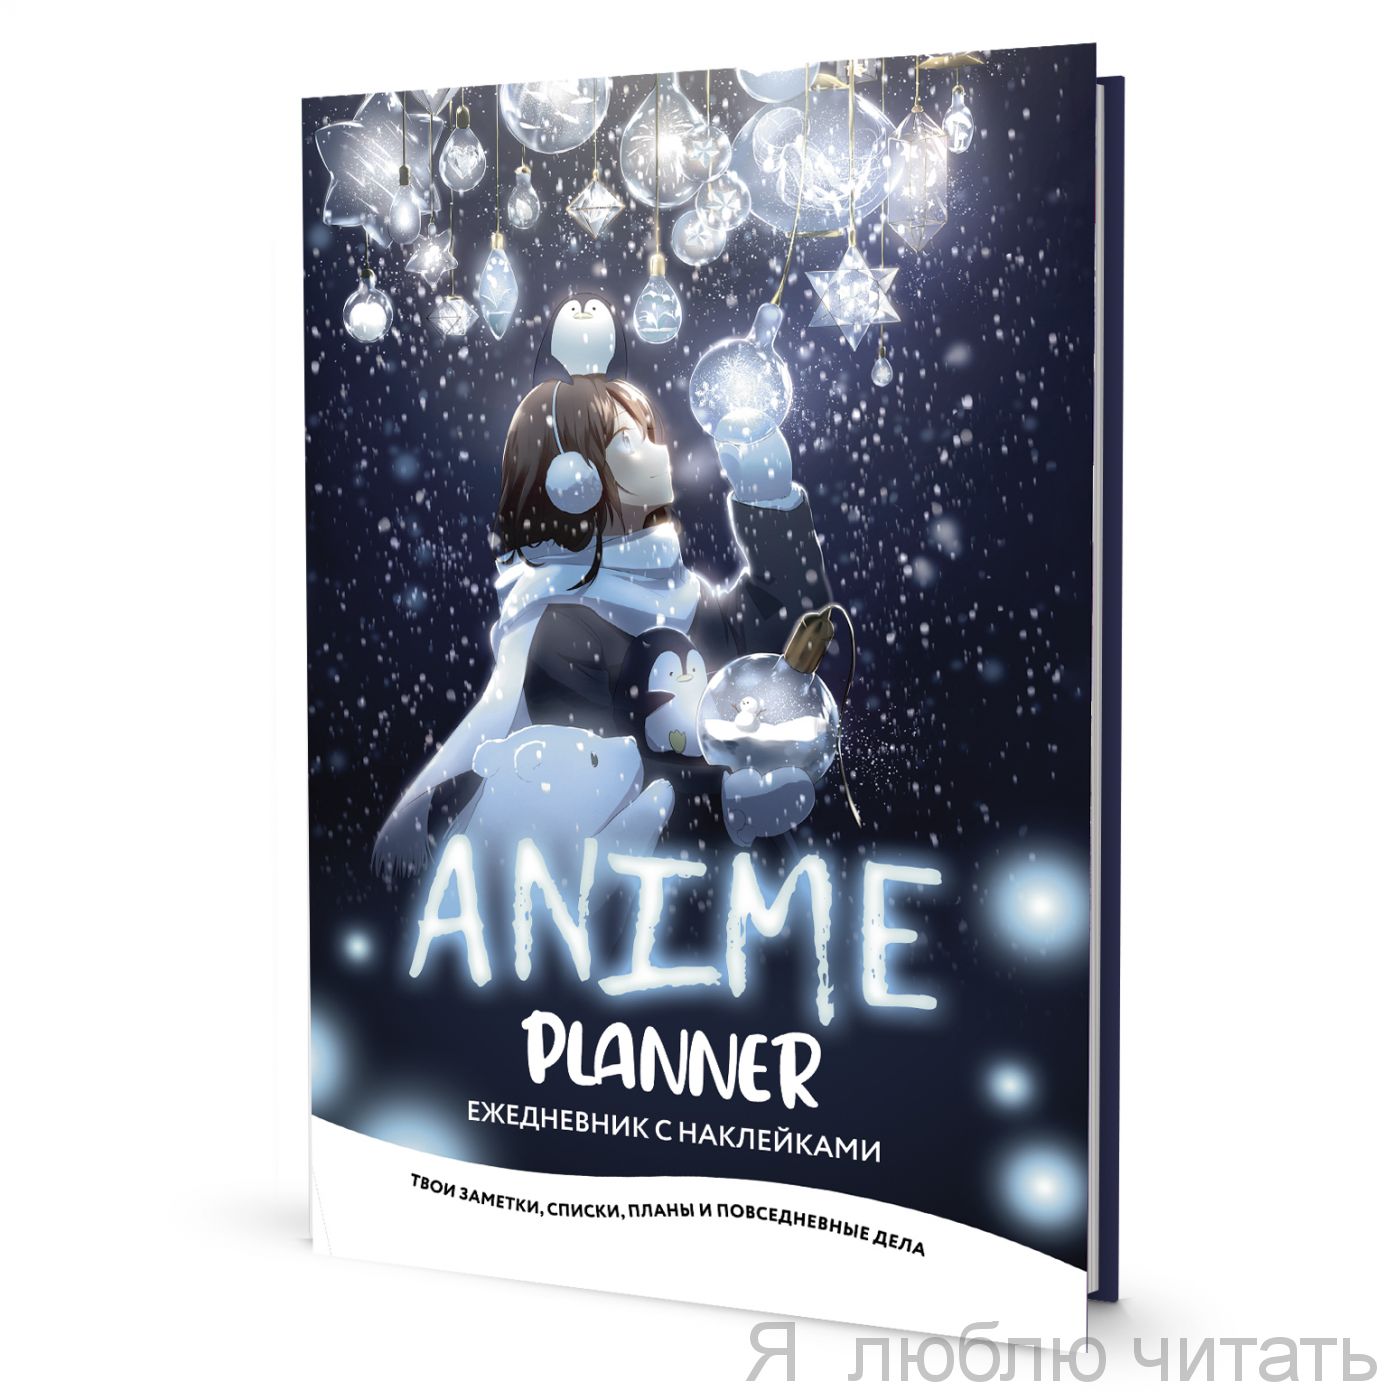 Ежедневник с наклейками Anime Planner (девочка с лампочками )